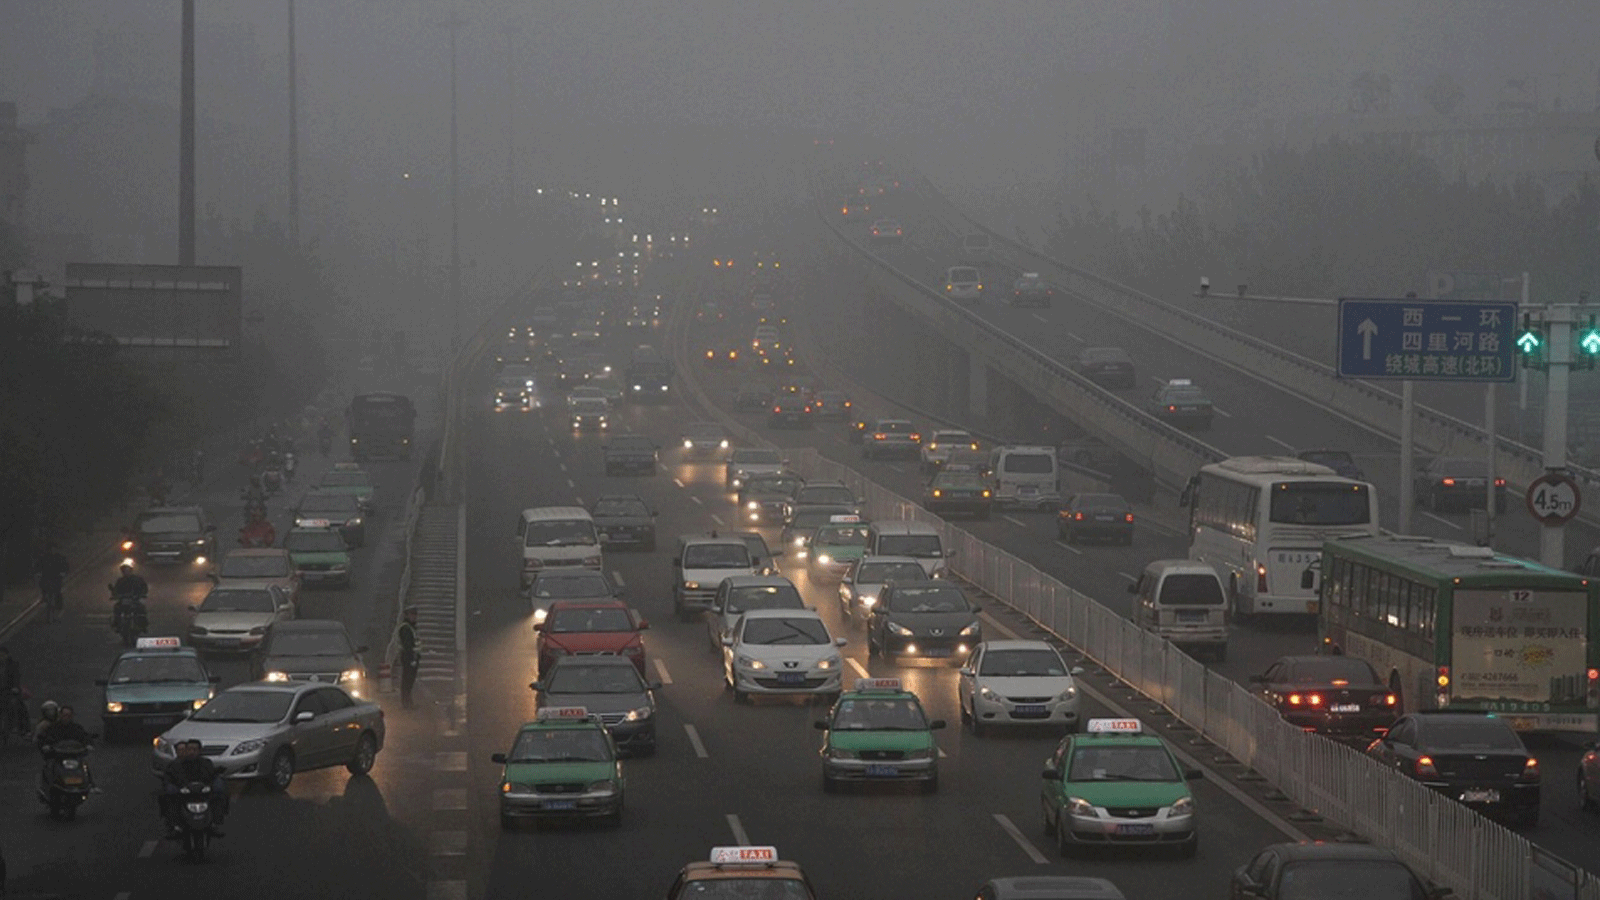 حركة المرور على طريق مليء بالضباب الدخاني في خفي بمقاطعة آنهوي الصينية